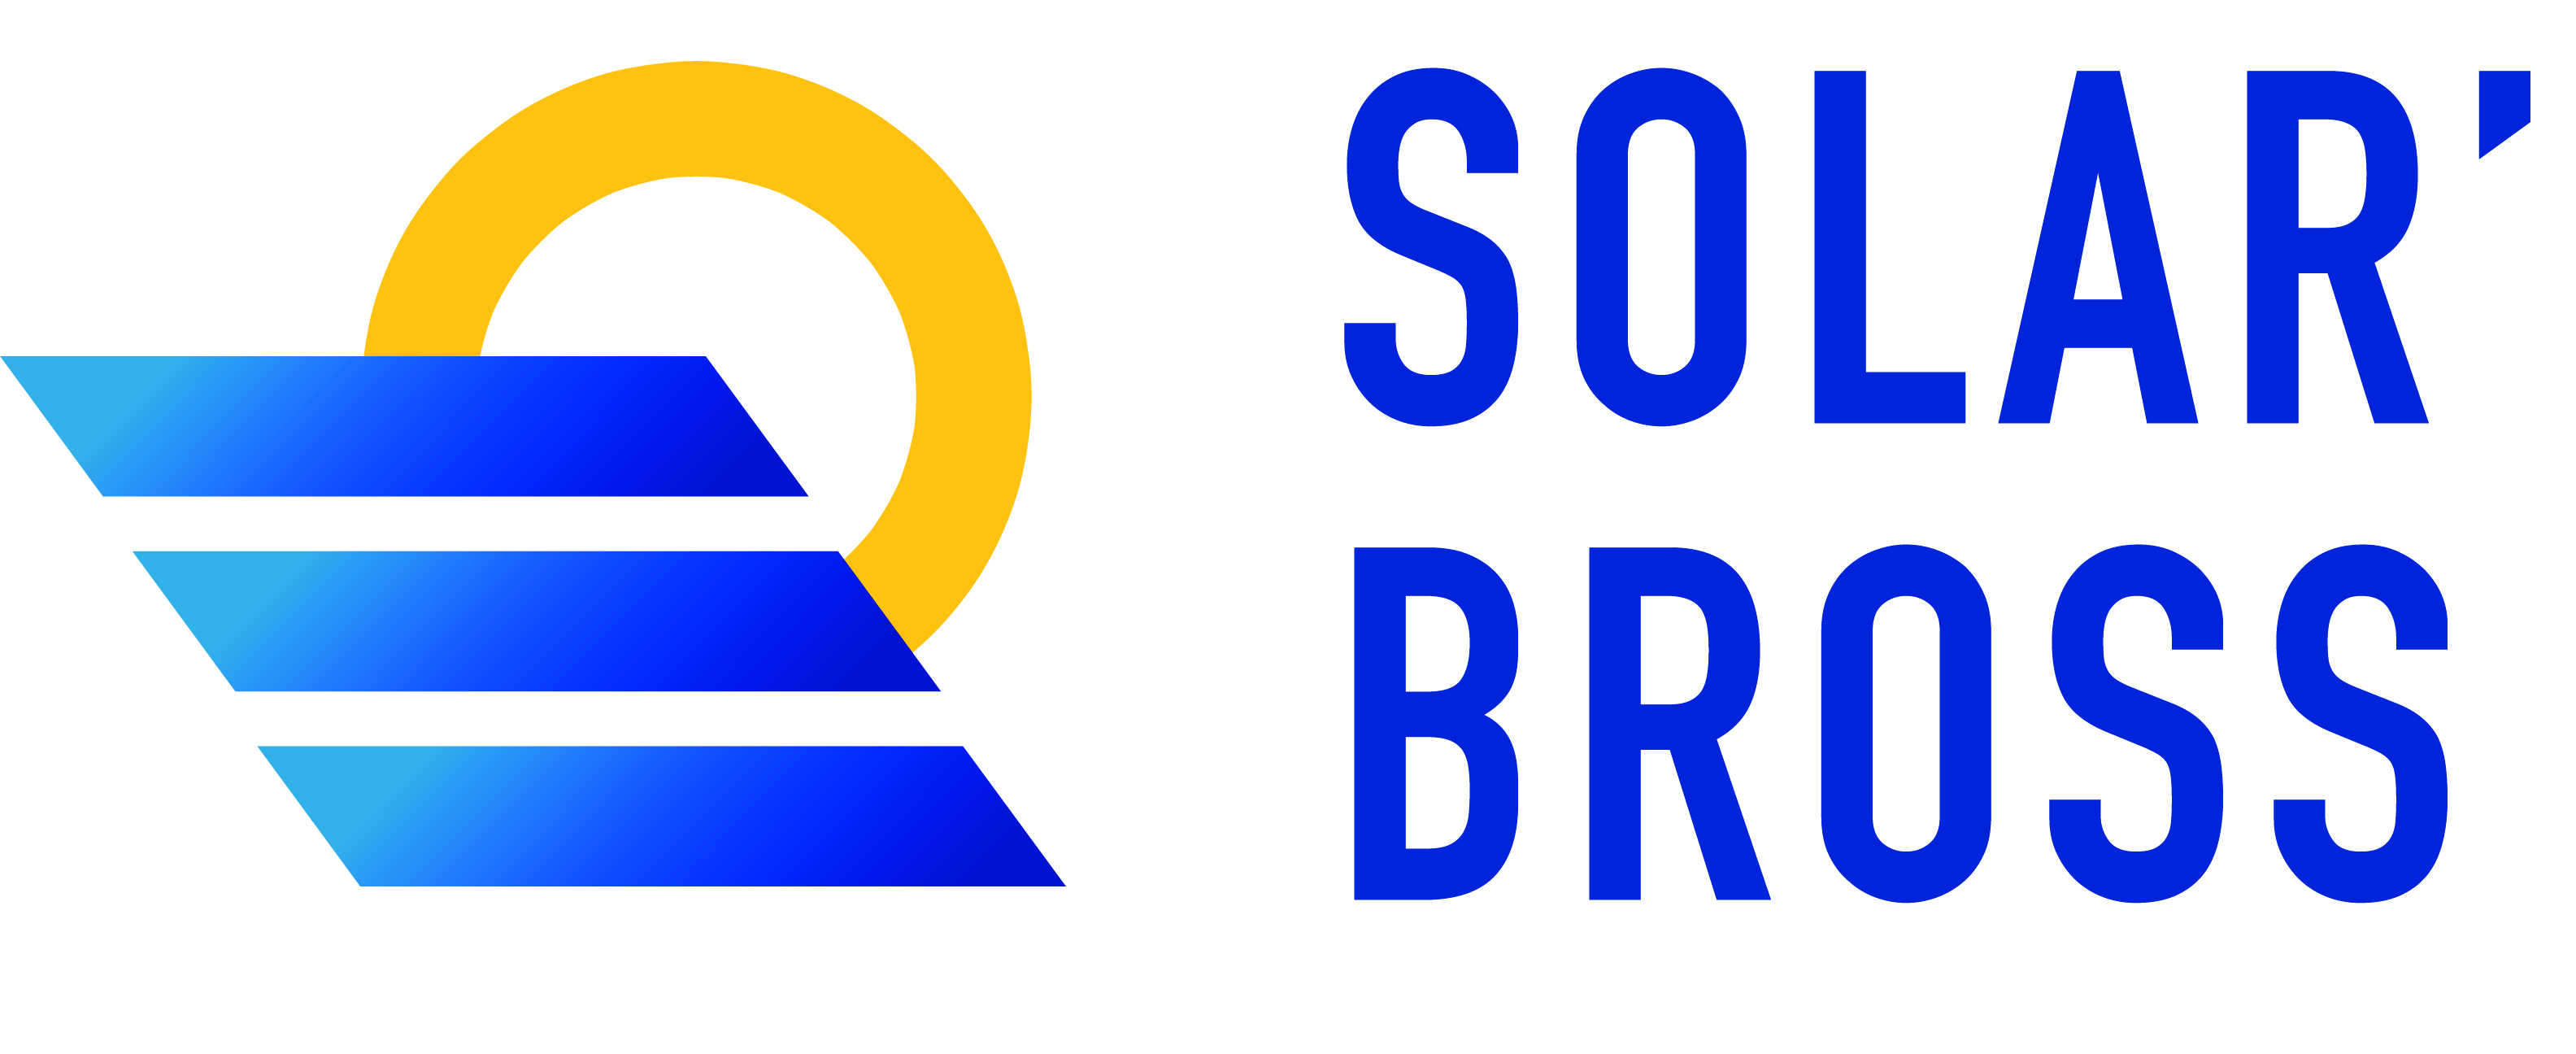 Logo : SOLAR'BROSS